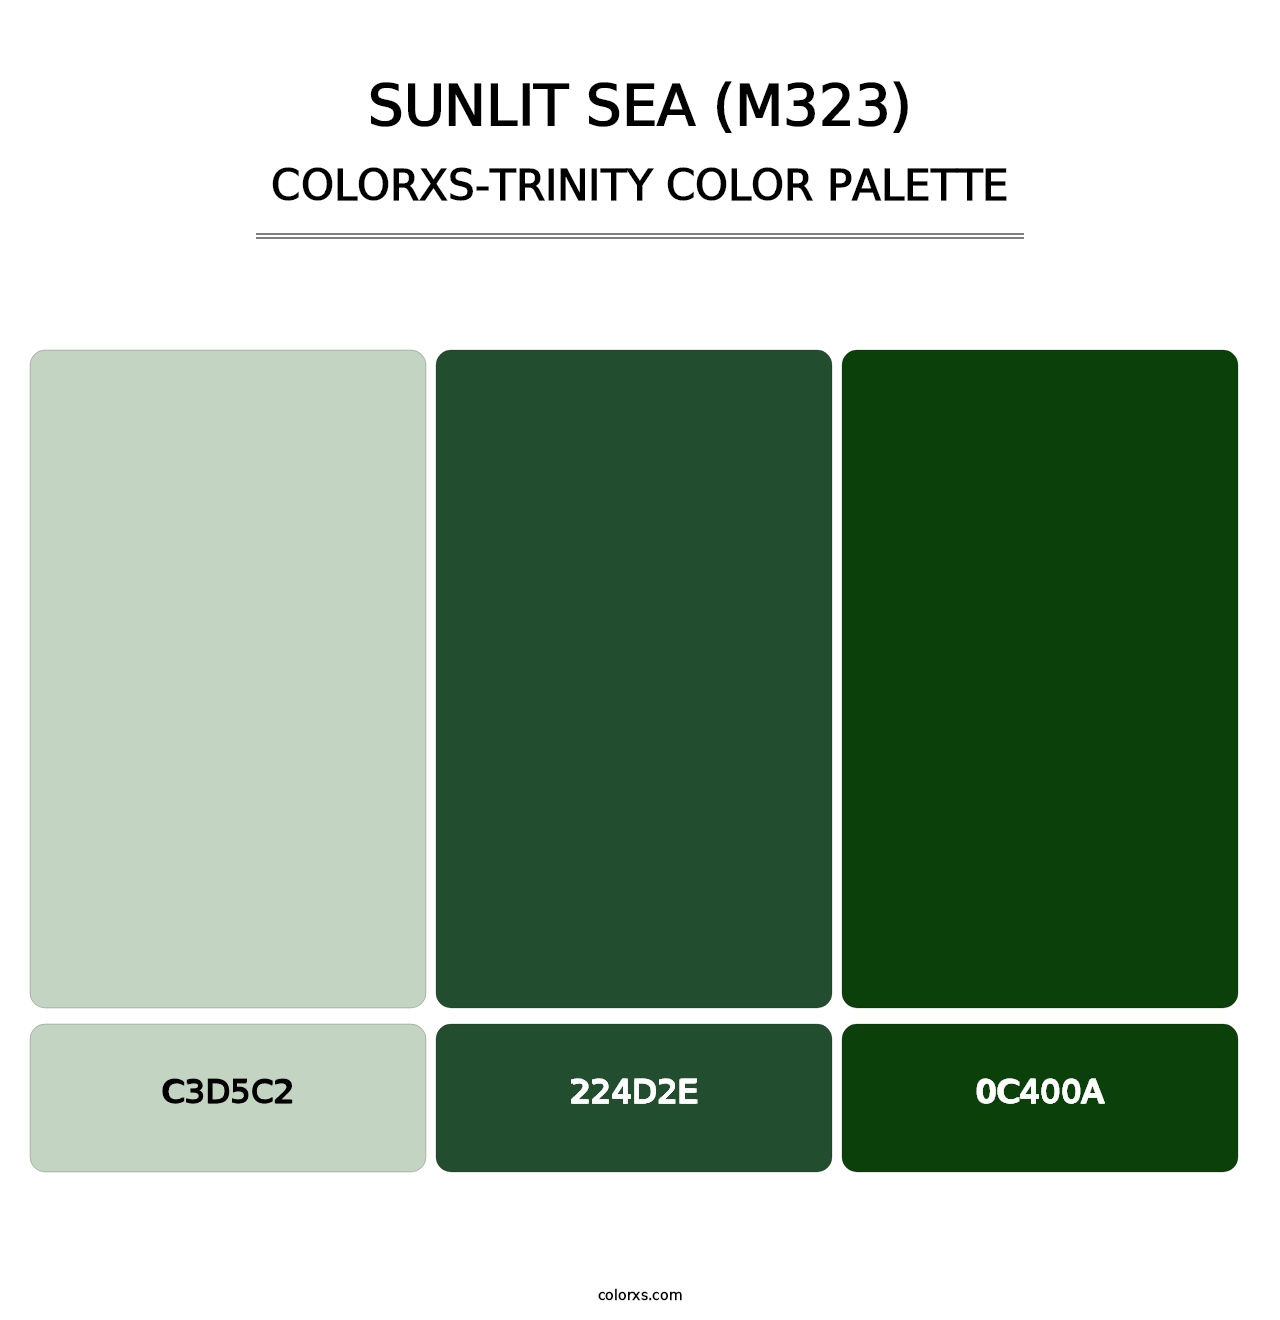 Sunlit Sea (M323) - Colorxs Trinity Palette